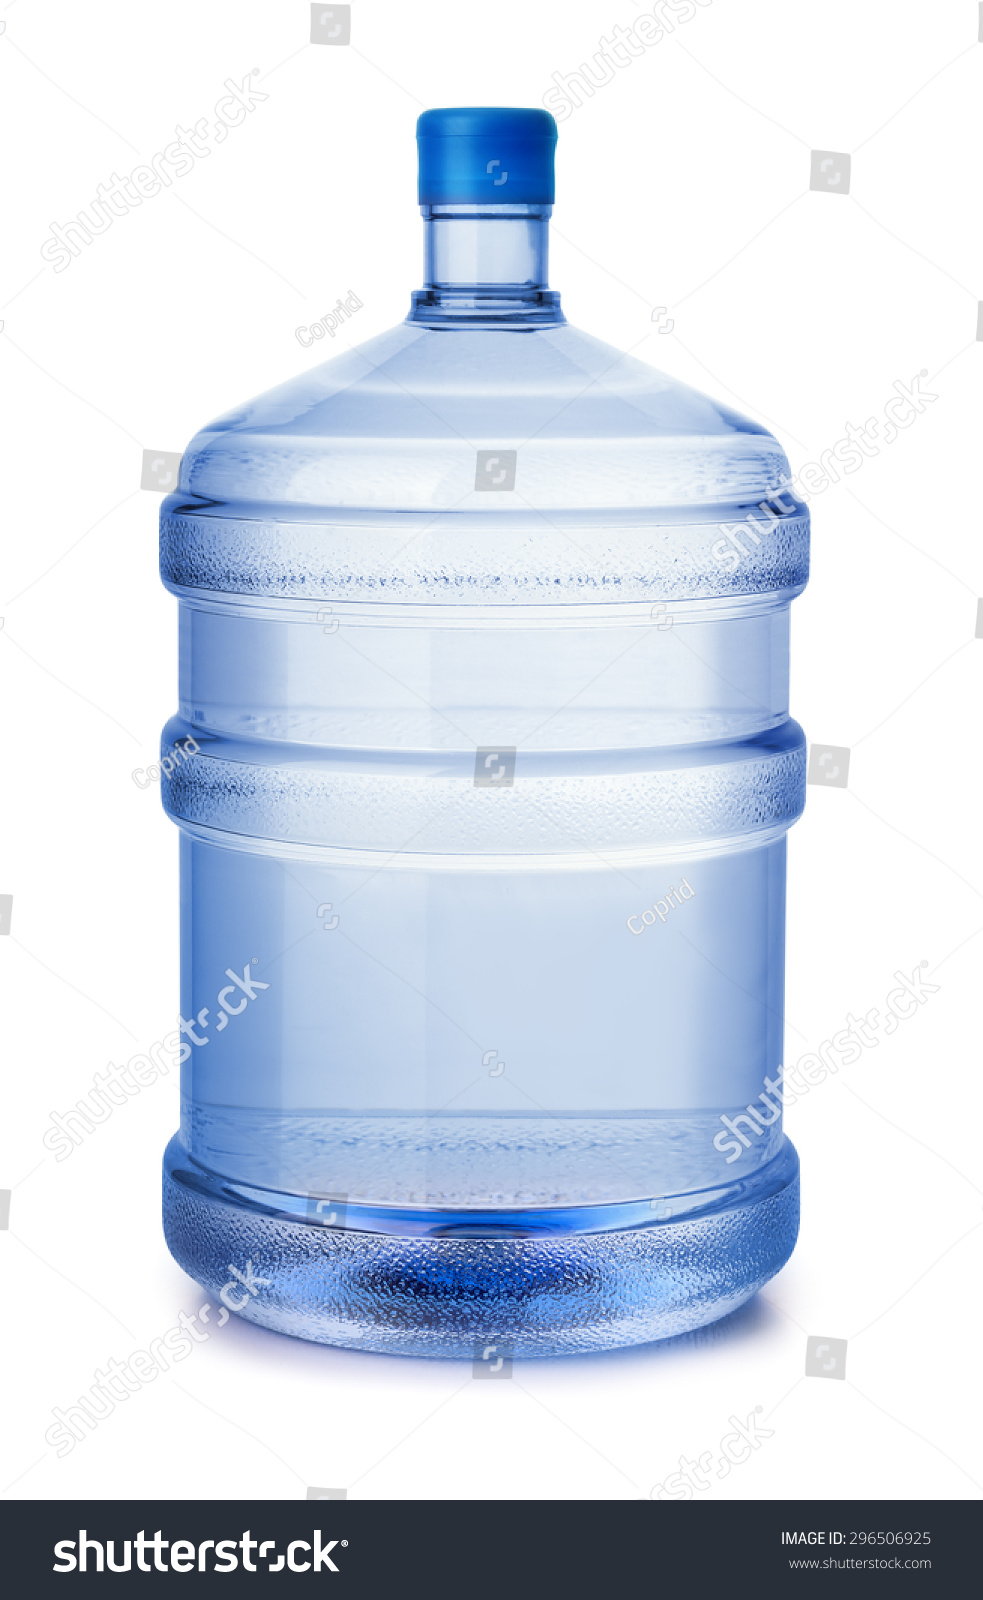 Бутылка из под кулера. Бутыль для воды 19л. Бутылка воды 19 л. Баллон воды 19 литров. Бутылка воды 15 литров.